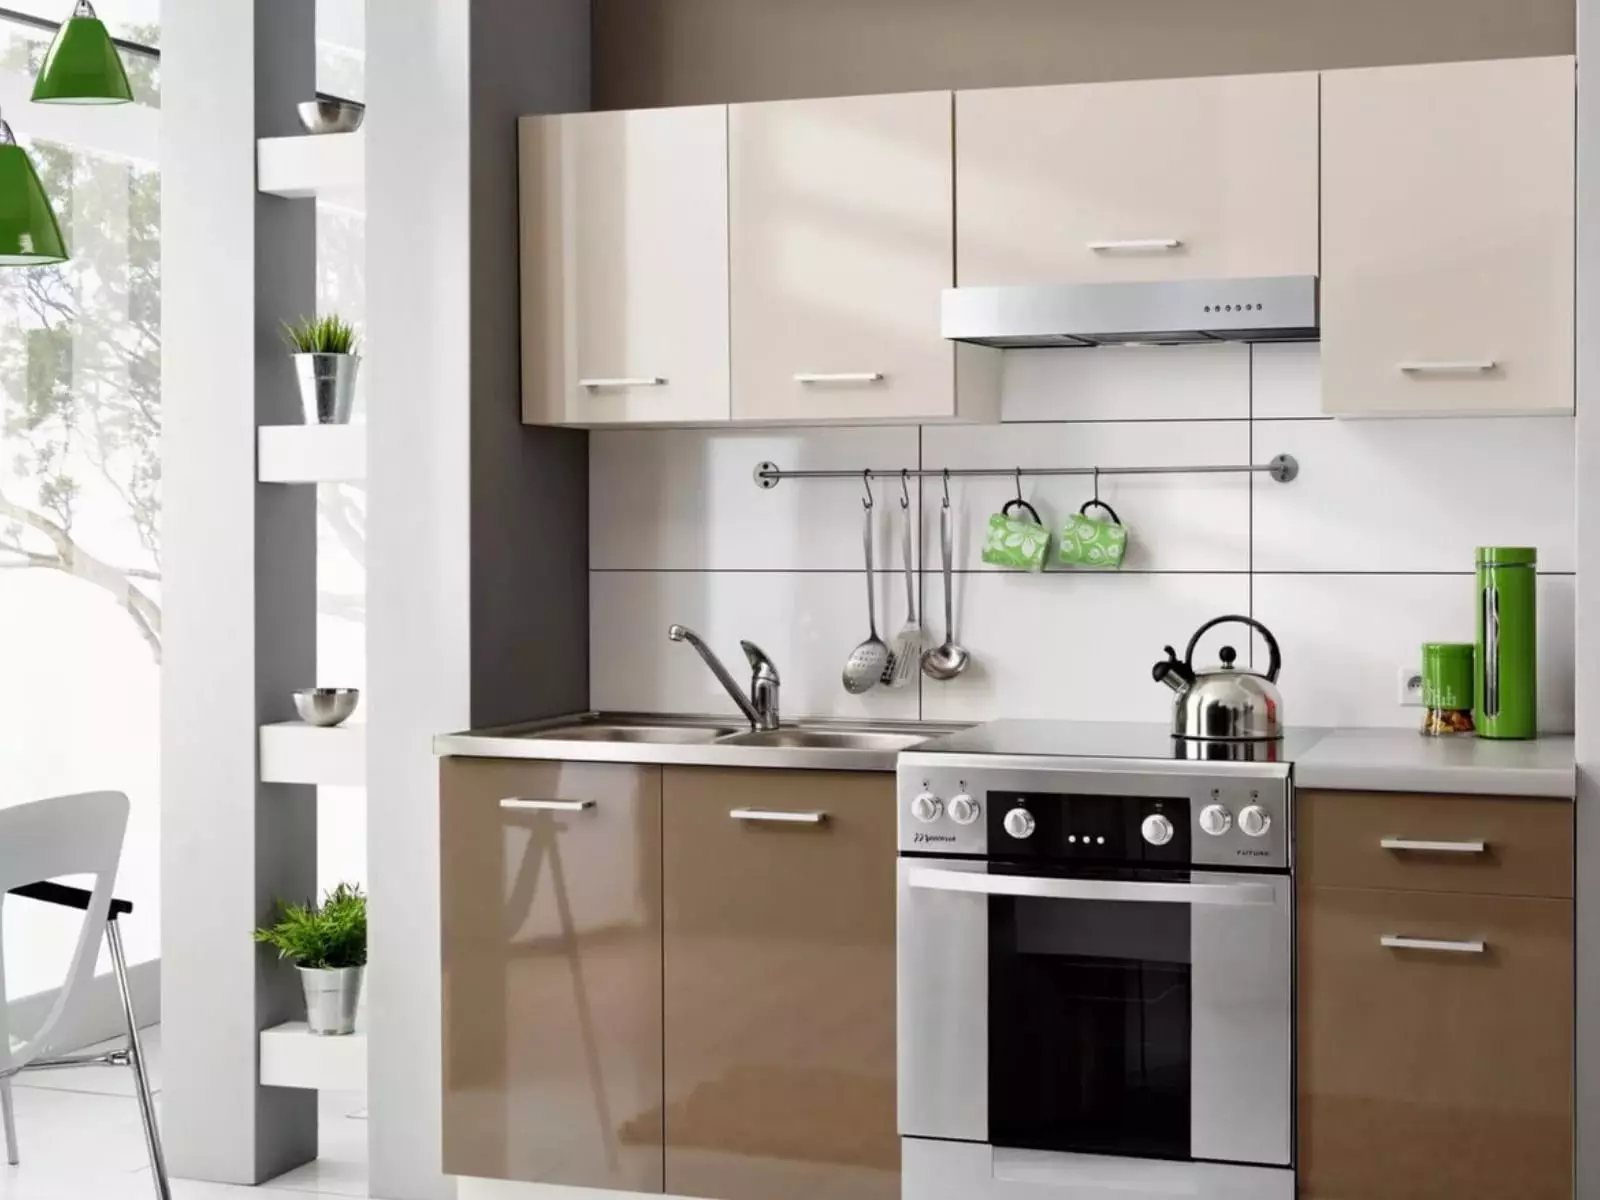 Ενσωματωμένη κουζίνα για μικρές κουζίνες (54 φωτογραφίες): Χαρακτηριστικά ενσωματωμένων κουζινών με ενσωματωμένο εξοπλισμό, επιλογές σχεδιασμού 9549_53